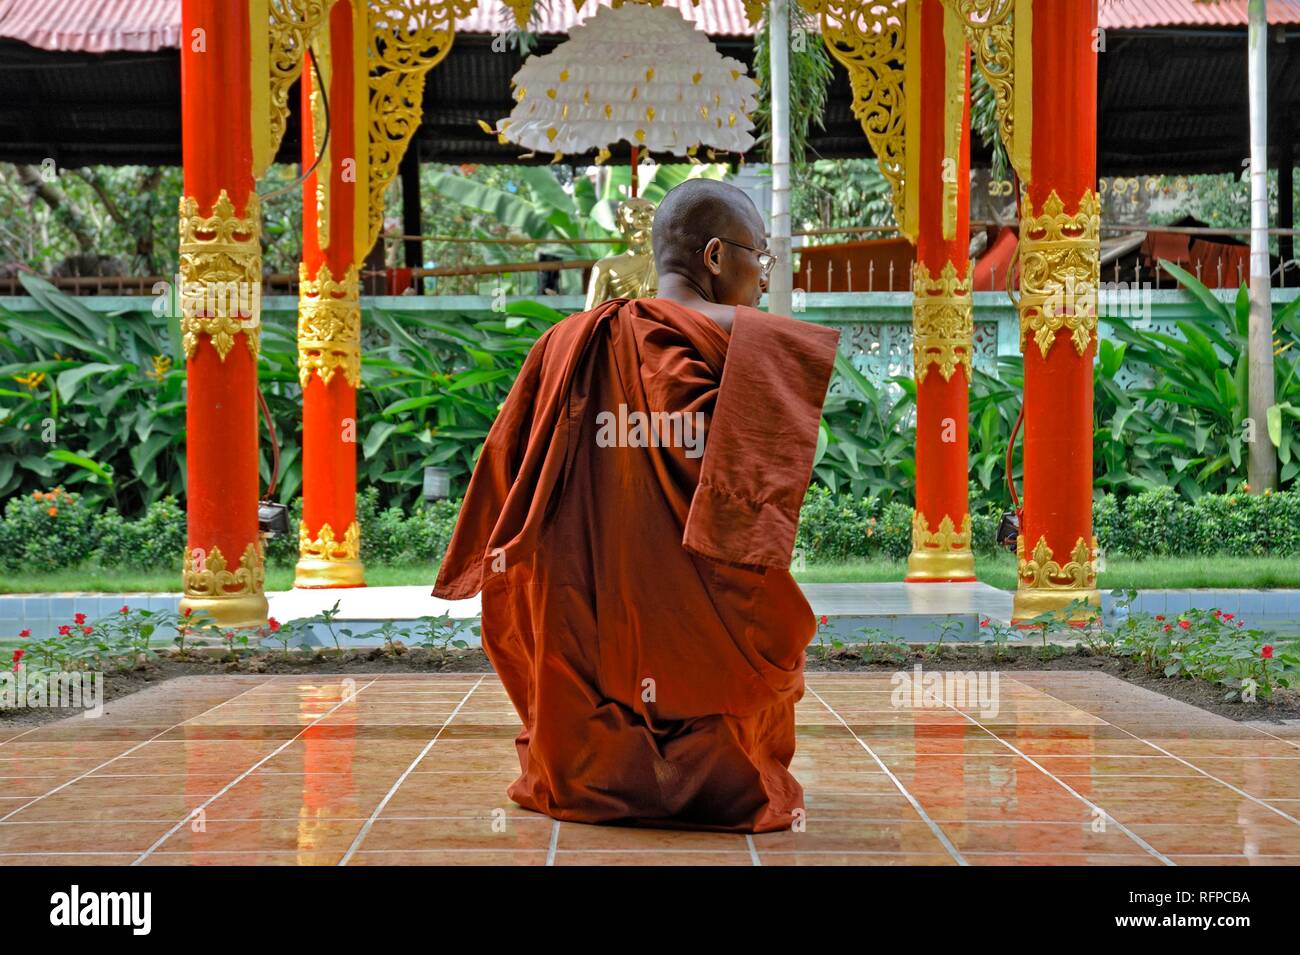 Le moine bouddhiste à l'intérieur d'une pagode, Myanmar, Birmanie Banque D'Images